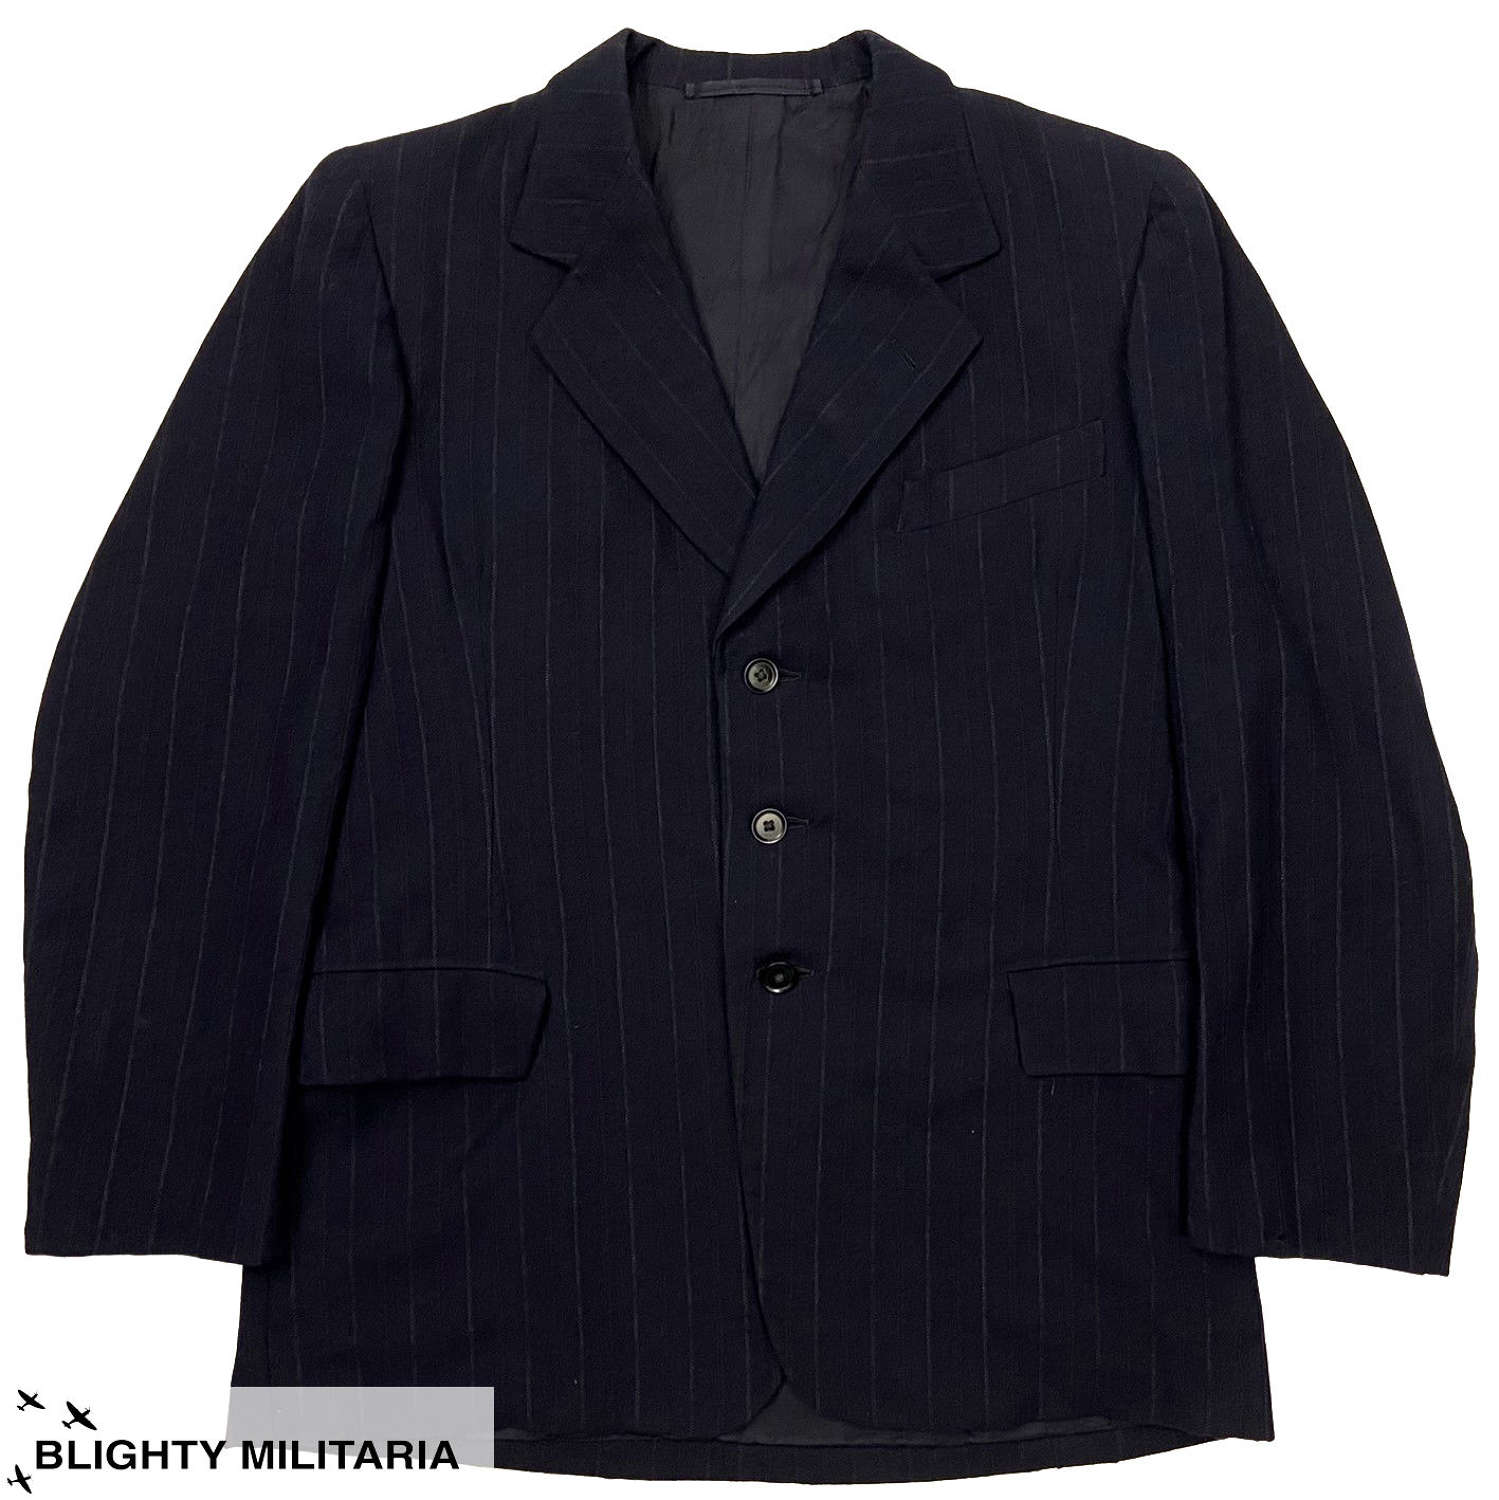 Original 1940s Men's Navy Blue Pinstripe Suit Jacket - Size 36